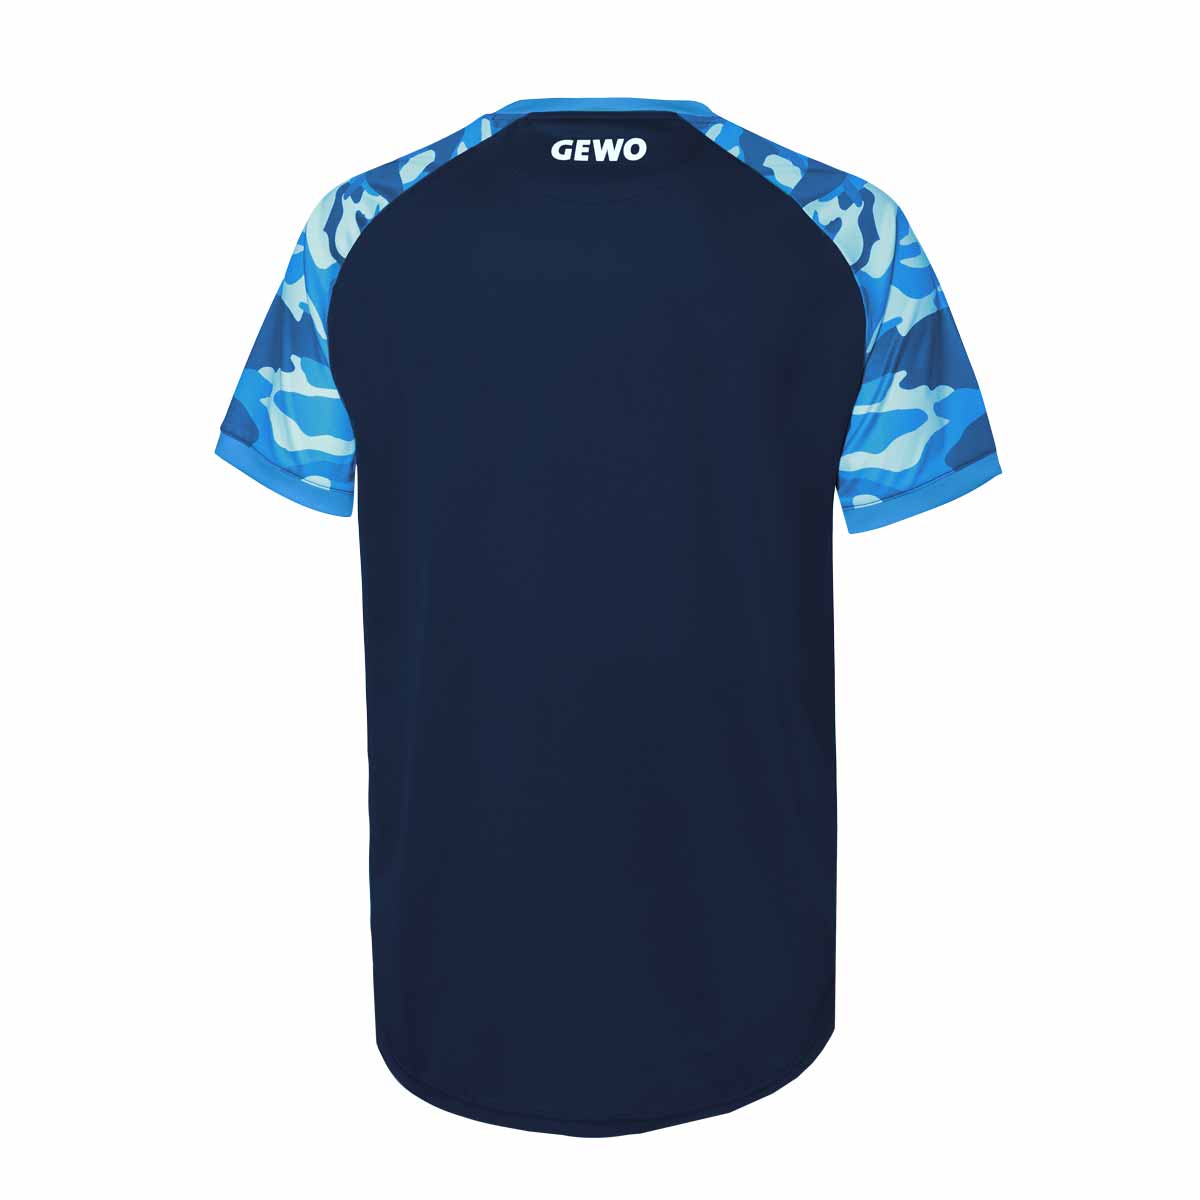 GEWO T-Shirt Riba navy/blau XXXXS